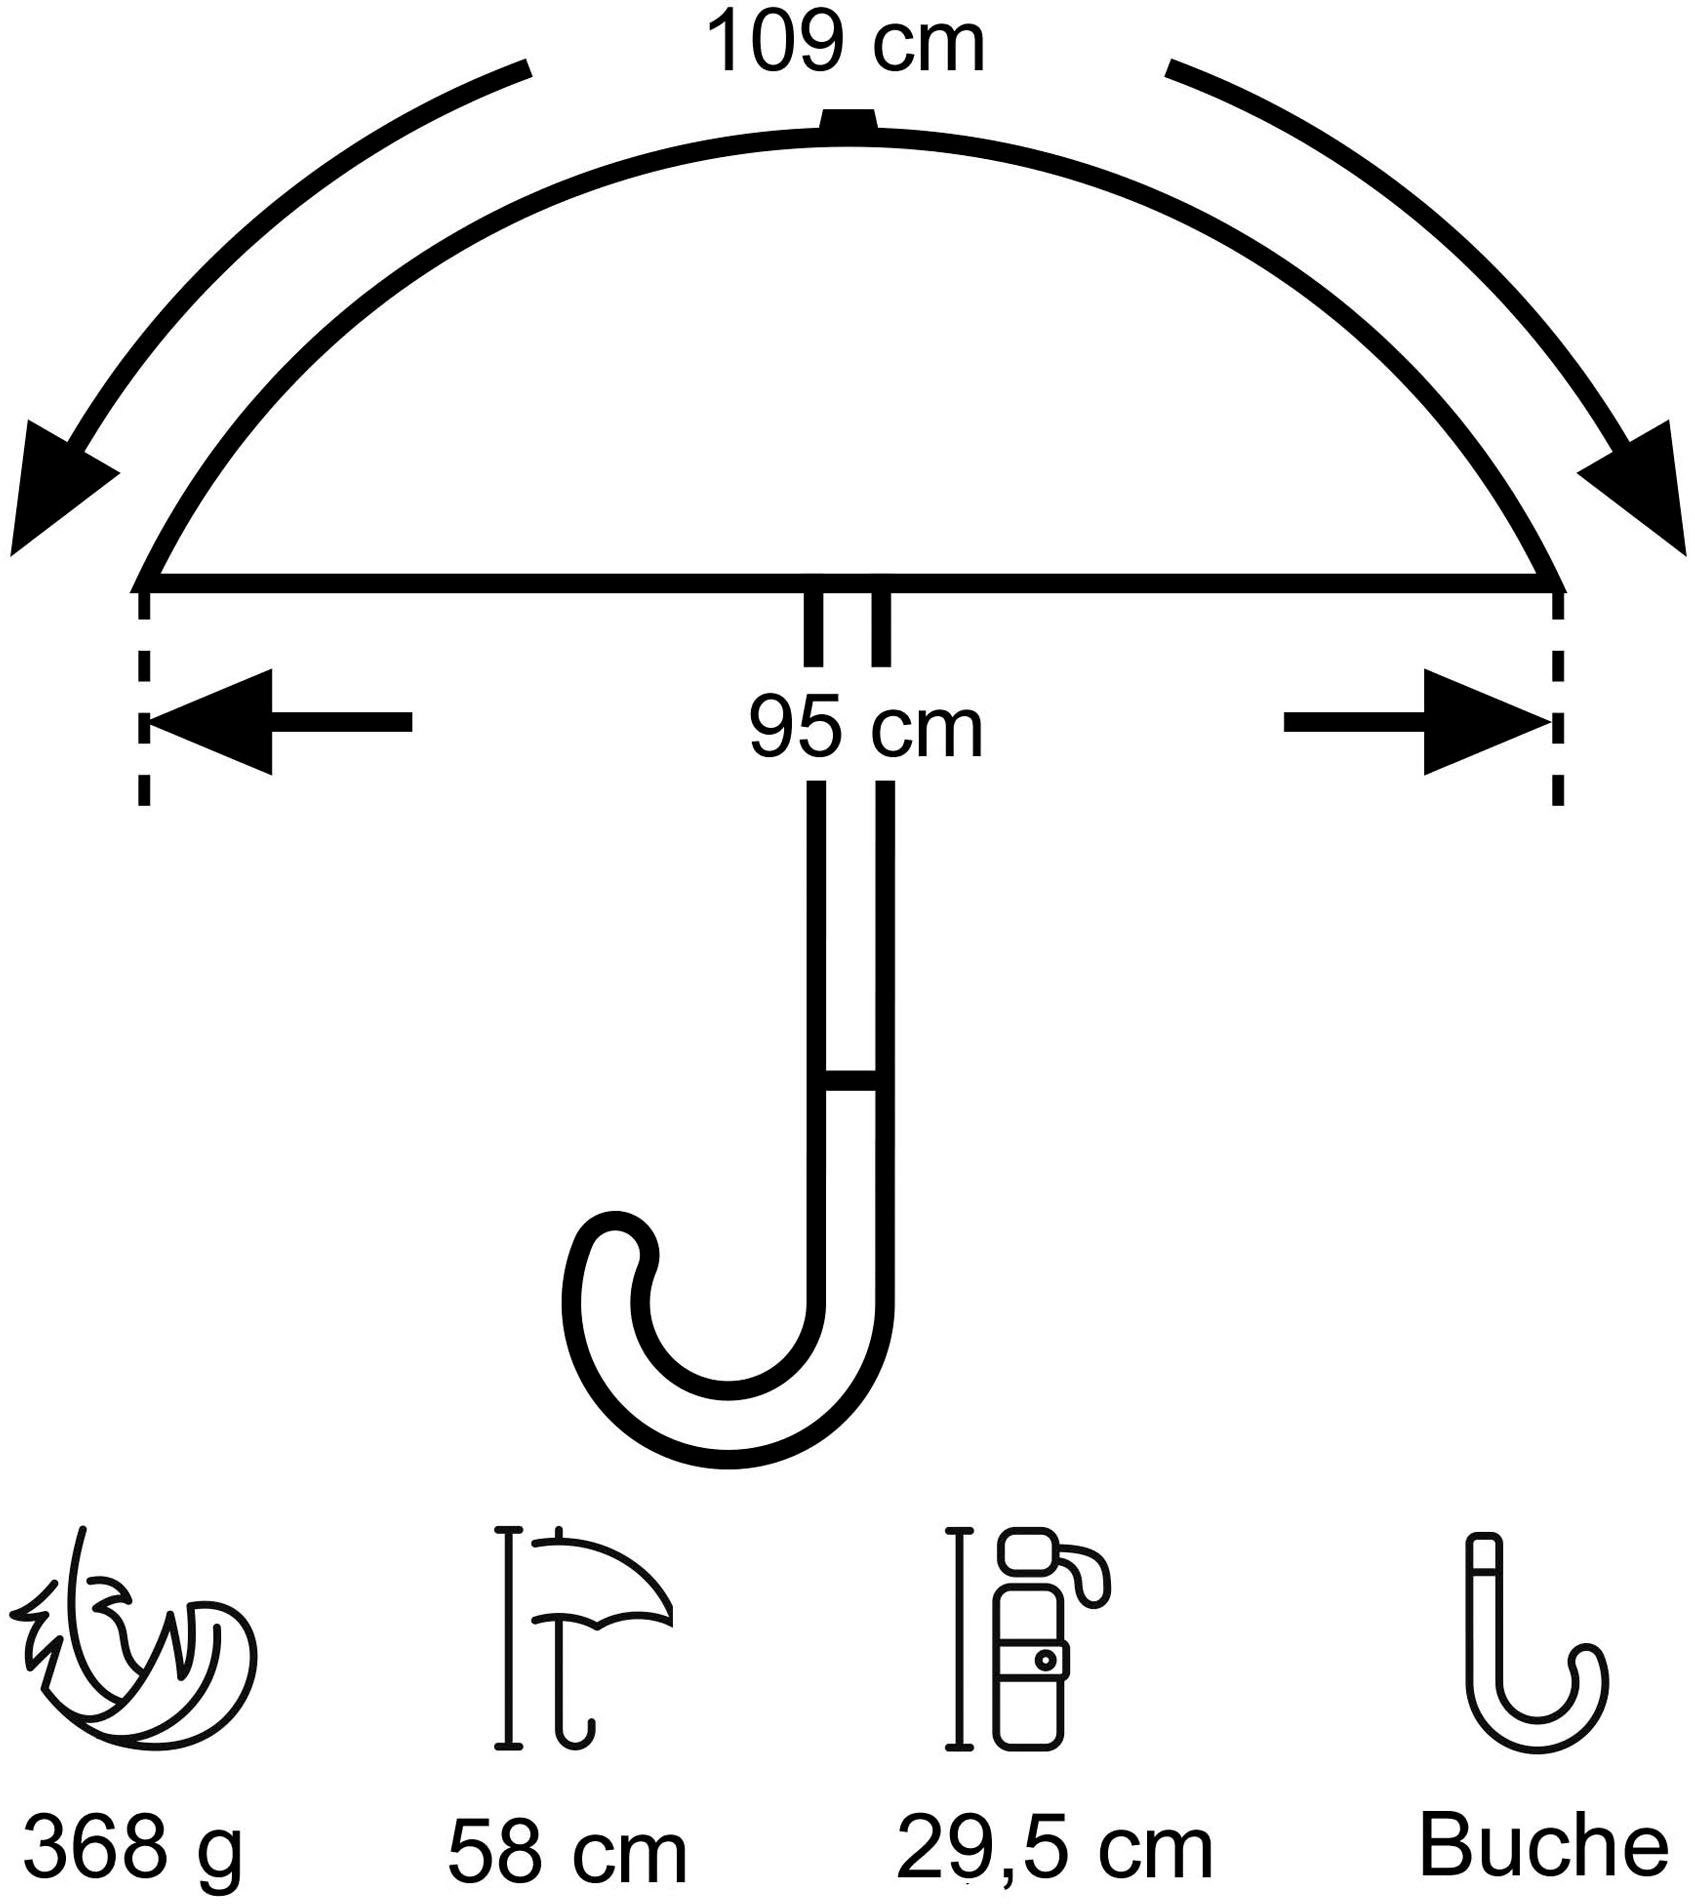 EuroSCHIRM® Taschenregenschirm marine, pink Punkte Umwelt-Taschenschirm